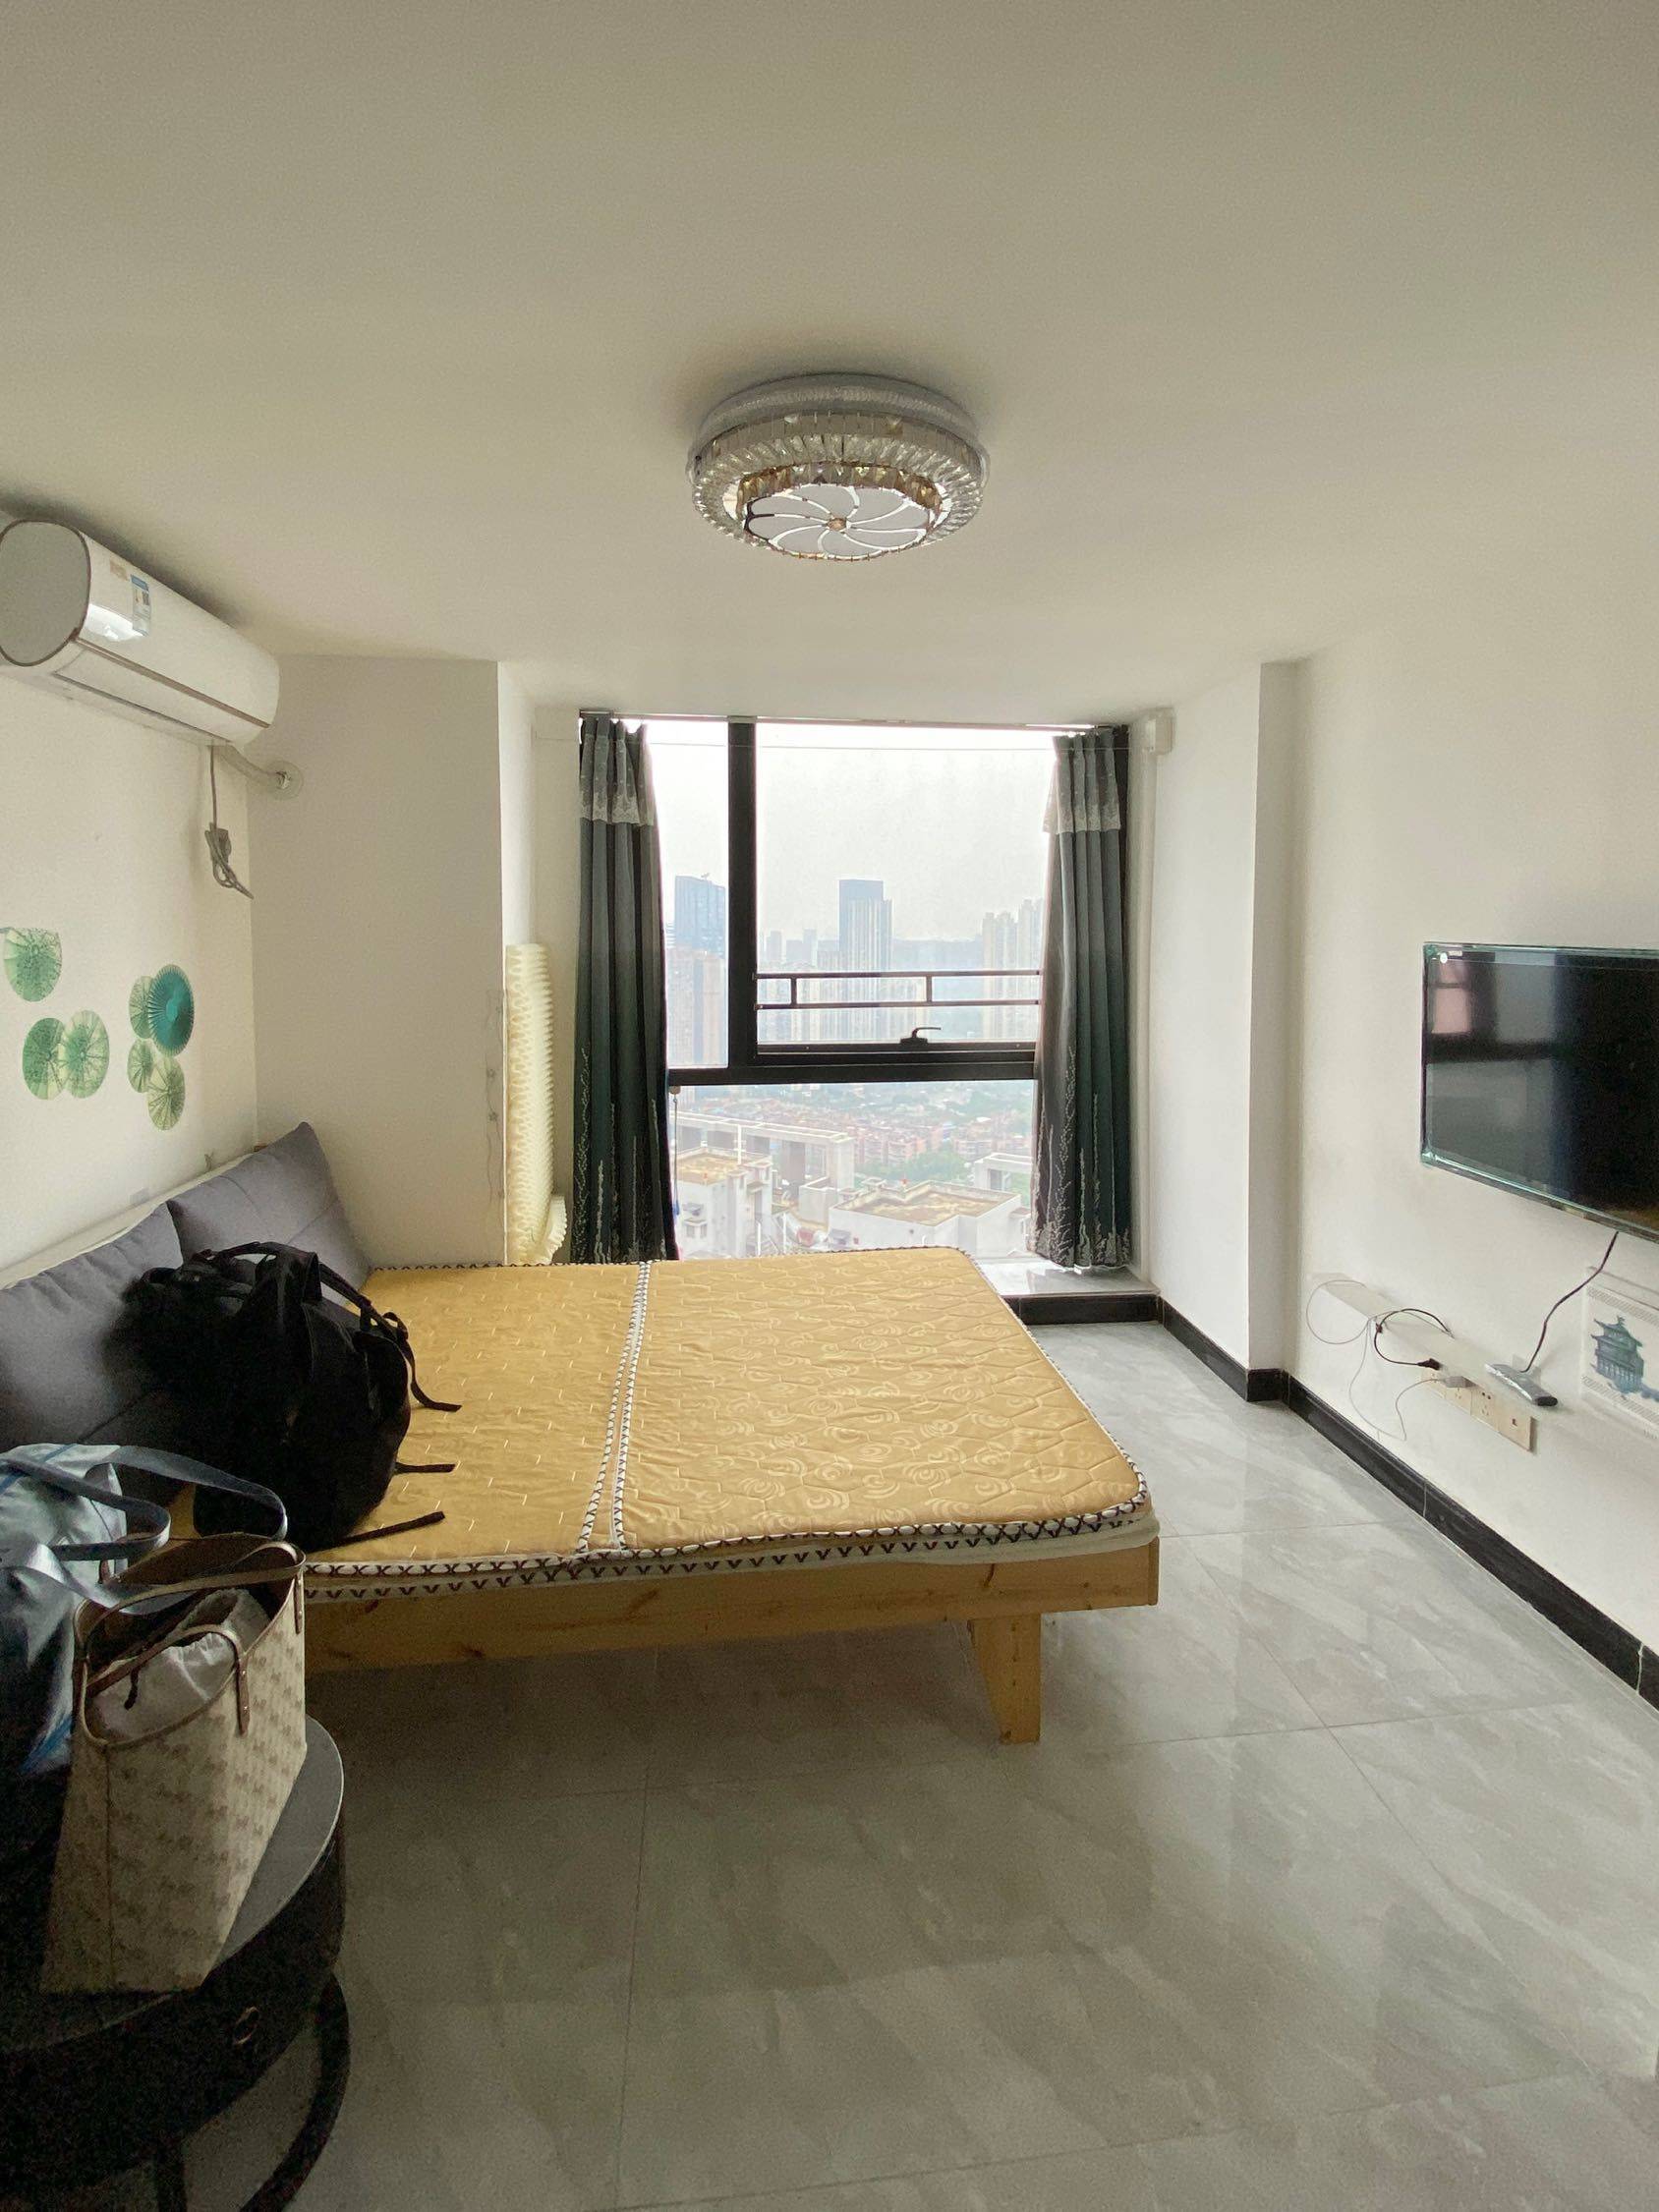 Chengdu-Chenghua-Cozy Home,Clean&Comfy,No Gender Limit,Hustle & Bustle,“Friends”,Chilled